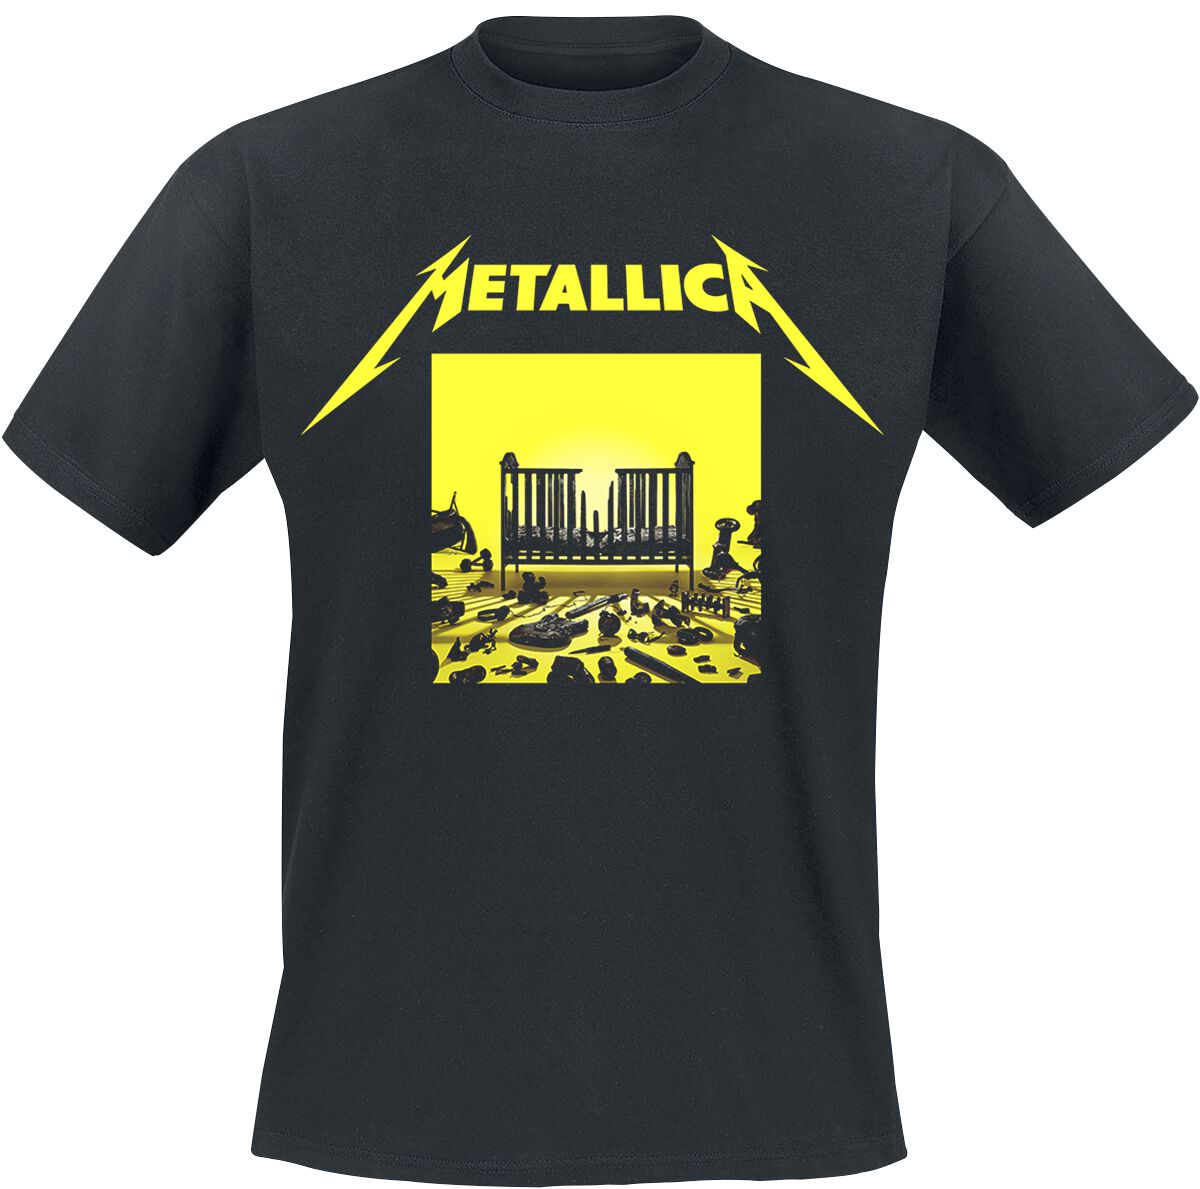 Metallica T-Shirt - M72 Squared Cover - S bis 5XL - für Männer - Größe XXL - schwarz  - Lizenziertes Merchandise!